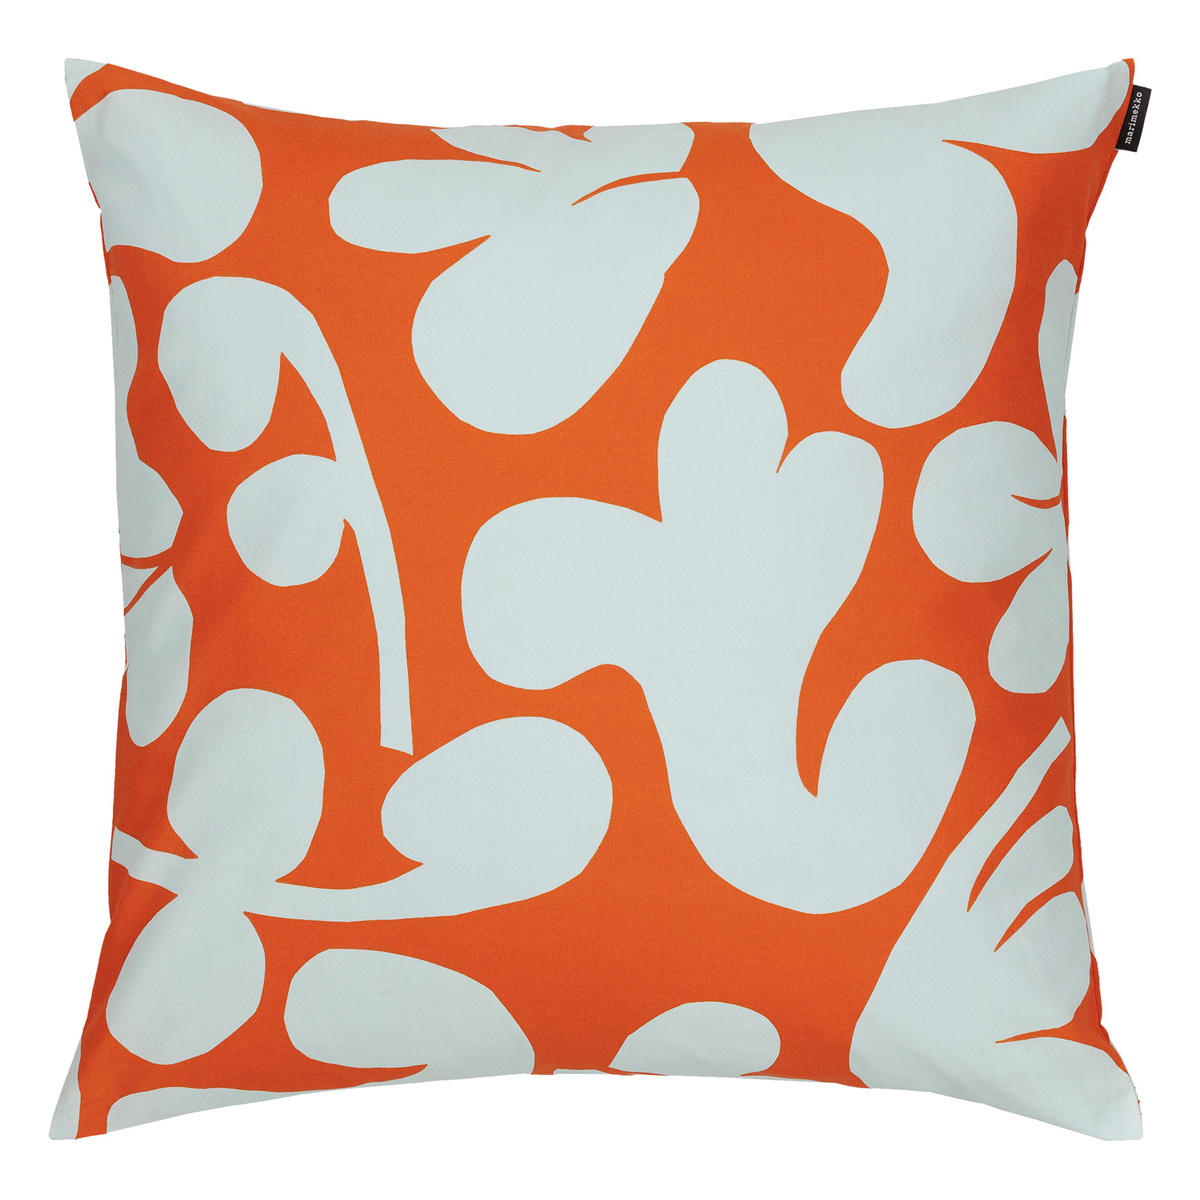 Marimekko Leikko tyynynpäällinen, 50 x cm, oranssi - vaaleansininen